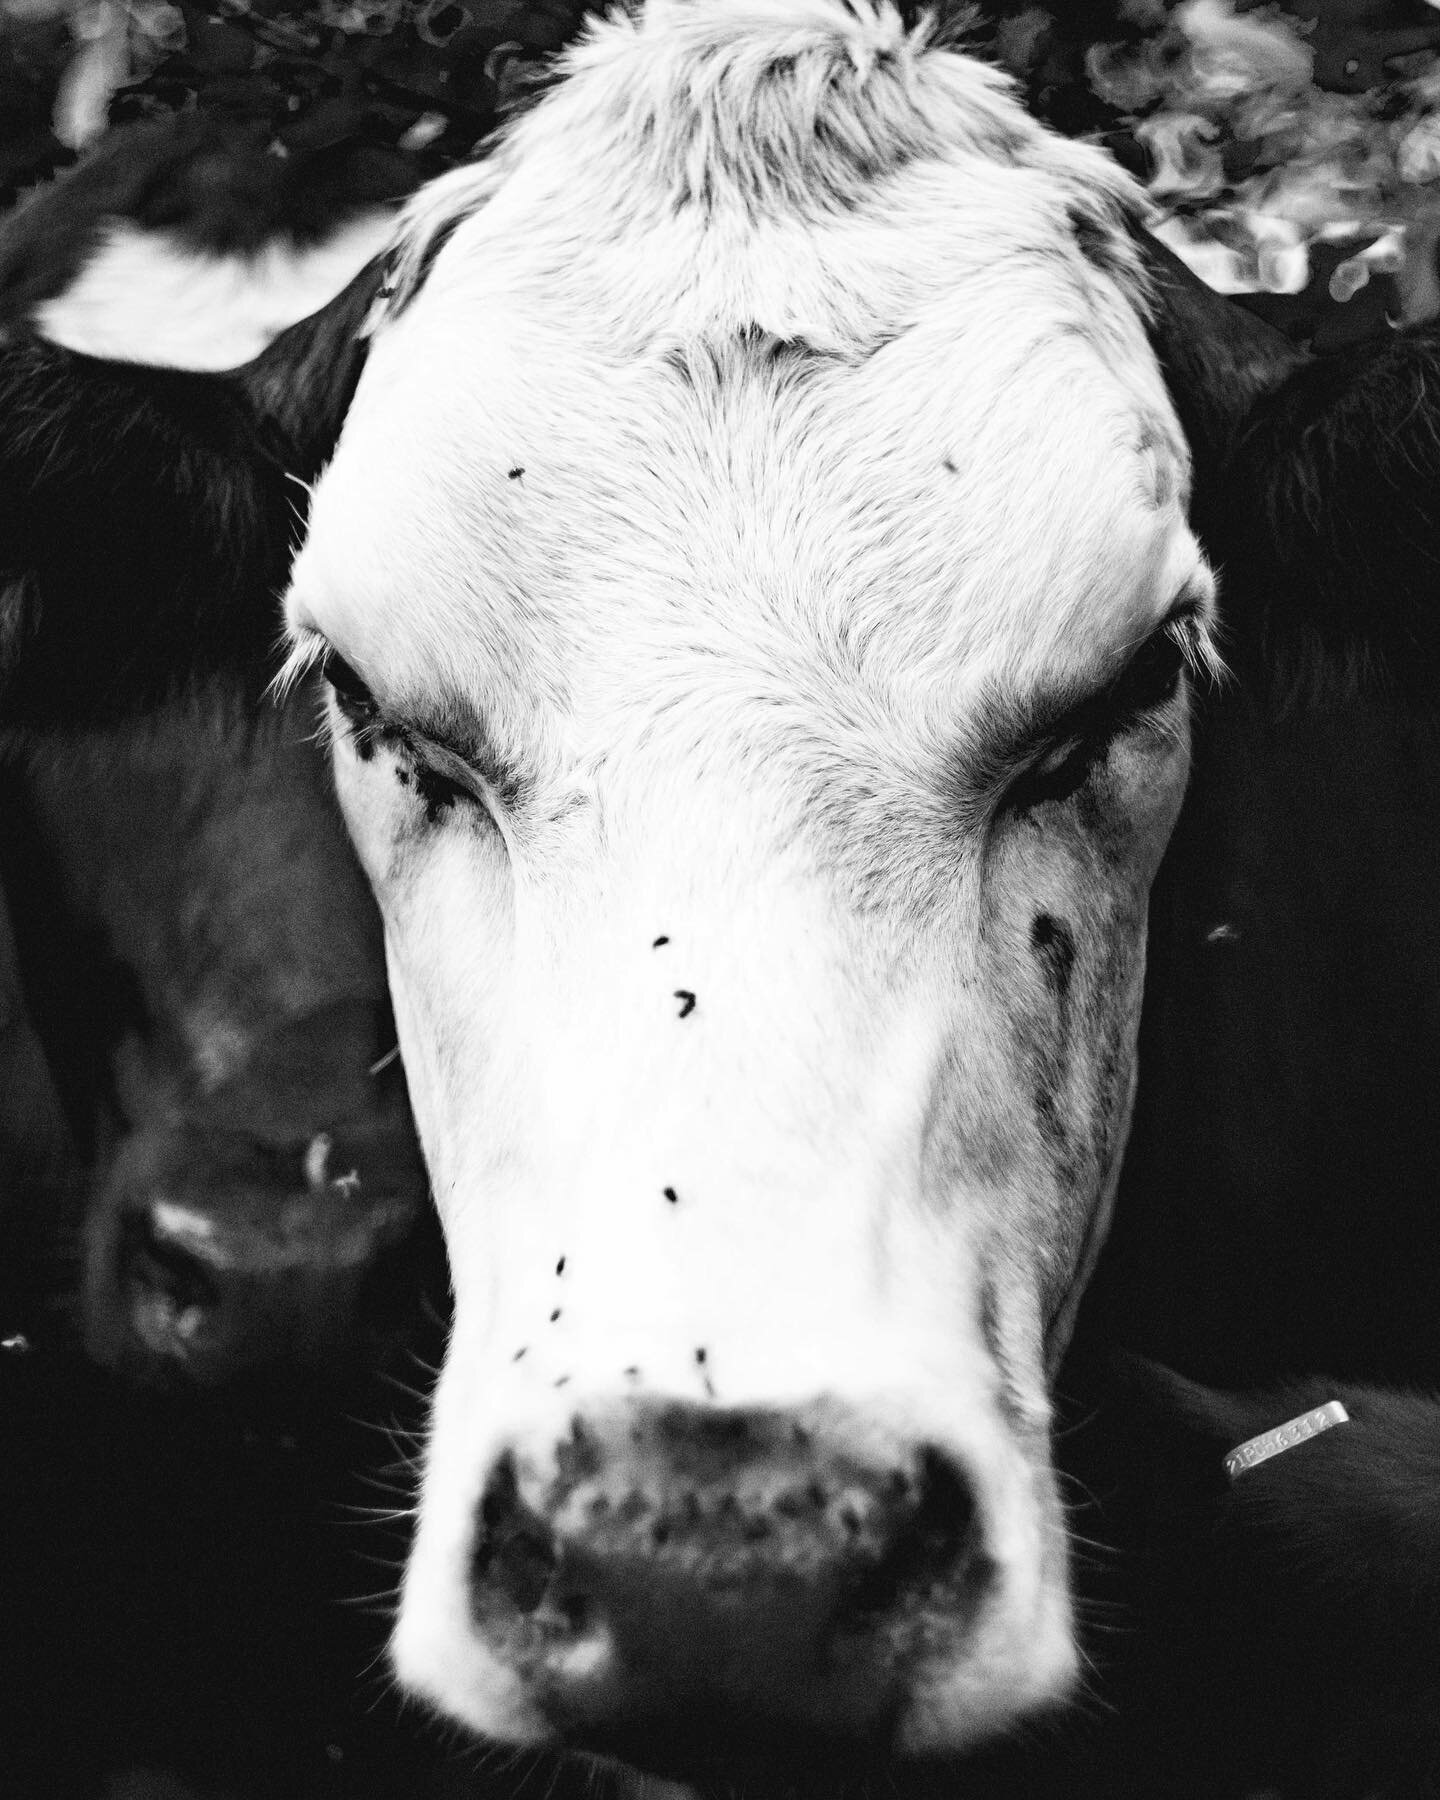 Vaca(s)
&bull;
&bull;
&bull;
&bull;
&bull;
&bull;
**Camera- Fujifilm xt1. Lens- Asahi Pentax Super Takumar 50mm f1.4
&bull;
&bull;
&bull;
&bull;
#pentax #supertakumar #asahipentax #50mmphotography #cow #portrait #highcontrast #jorgelunaphotography #i